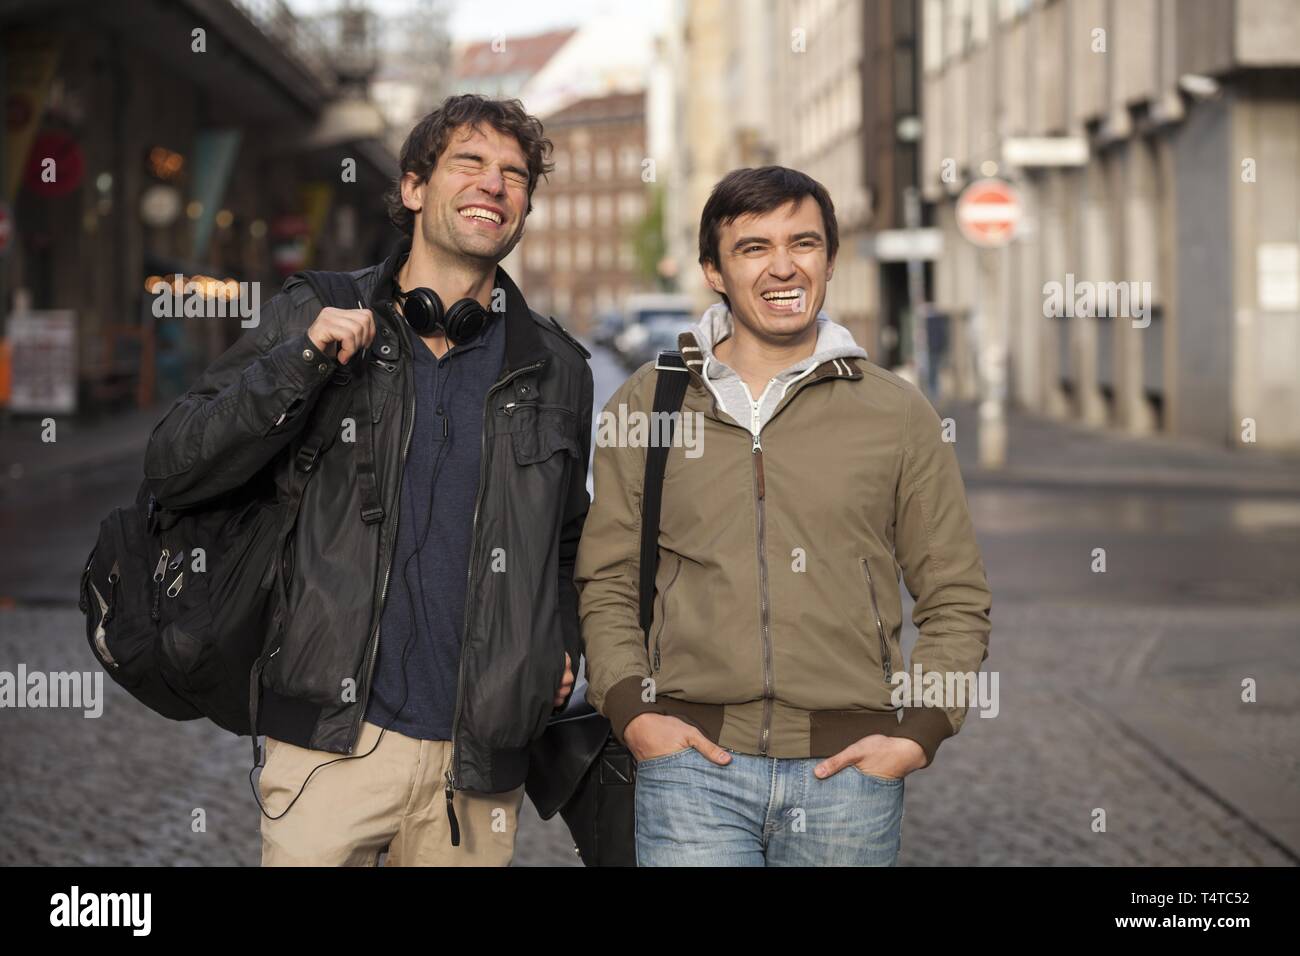 Junge Männer gehen auf die Straße Stockfoto